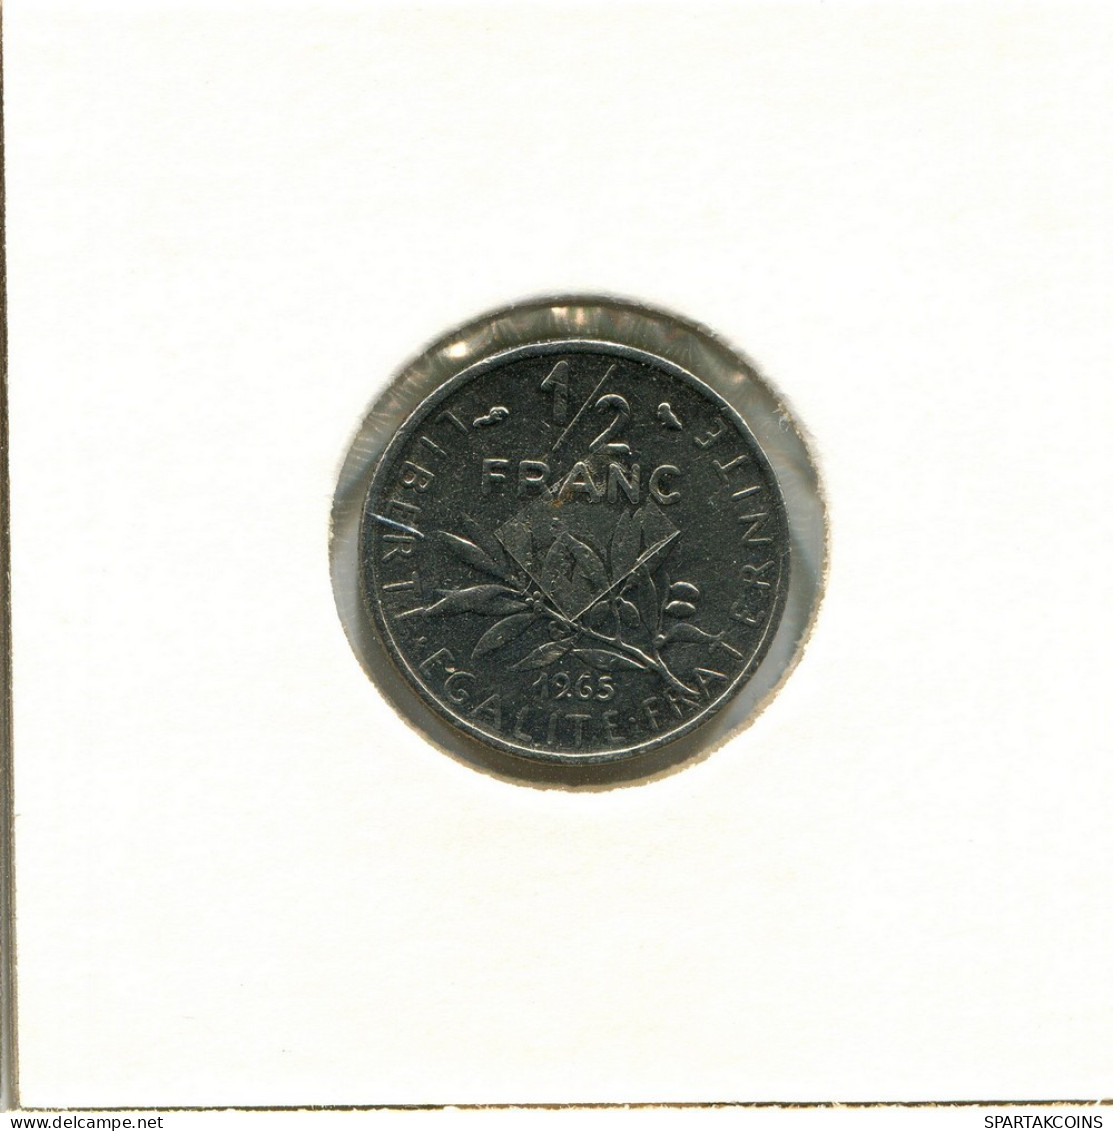 1/2 FRANC 1965 FRANCE Coin #BB516.U.A - 1/2 Franc